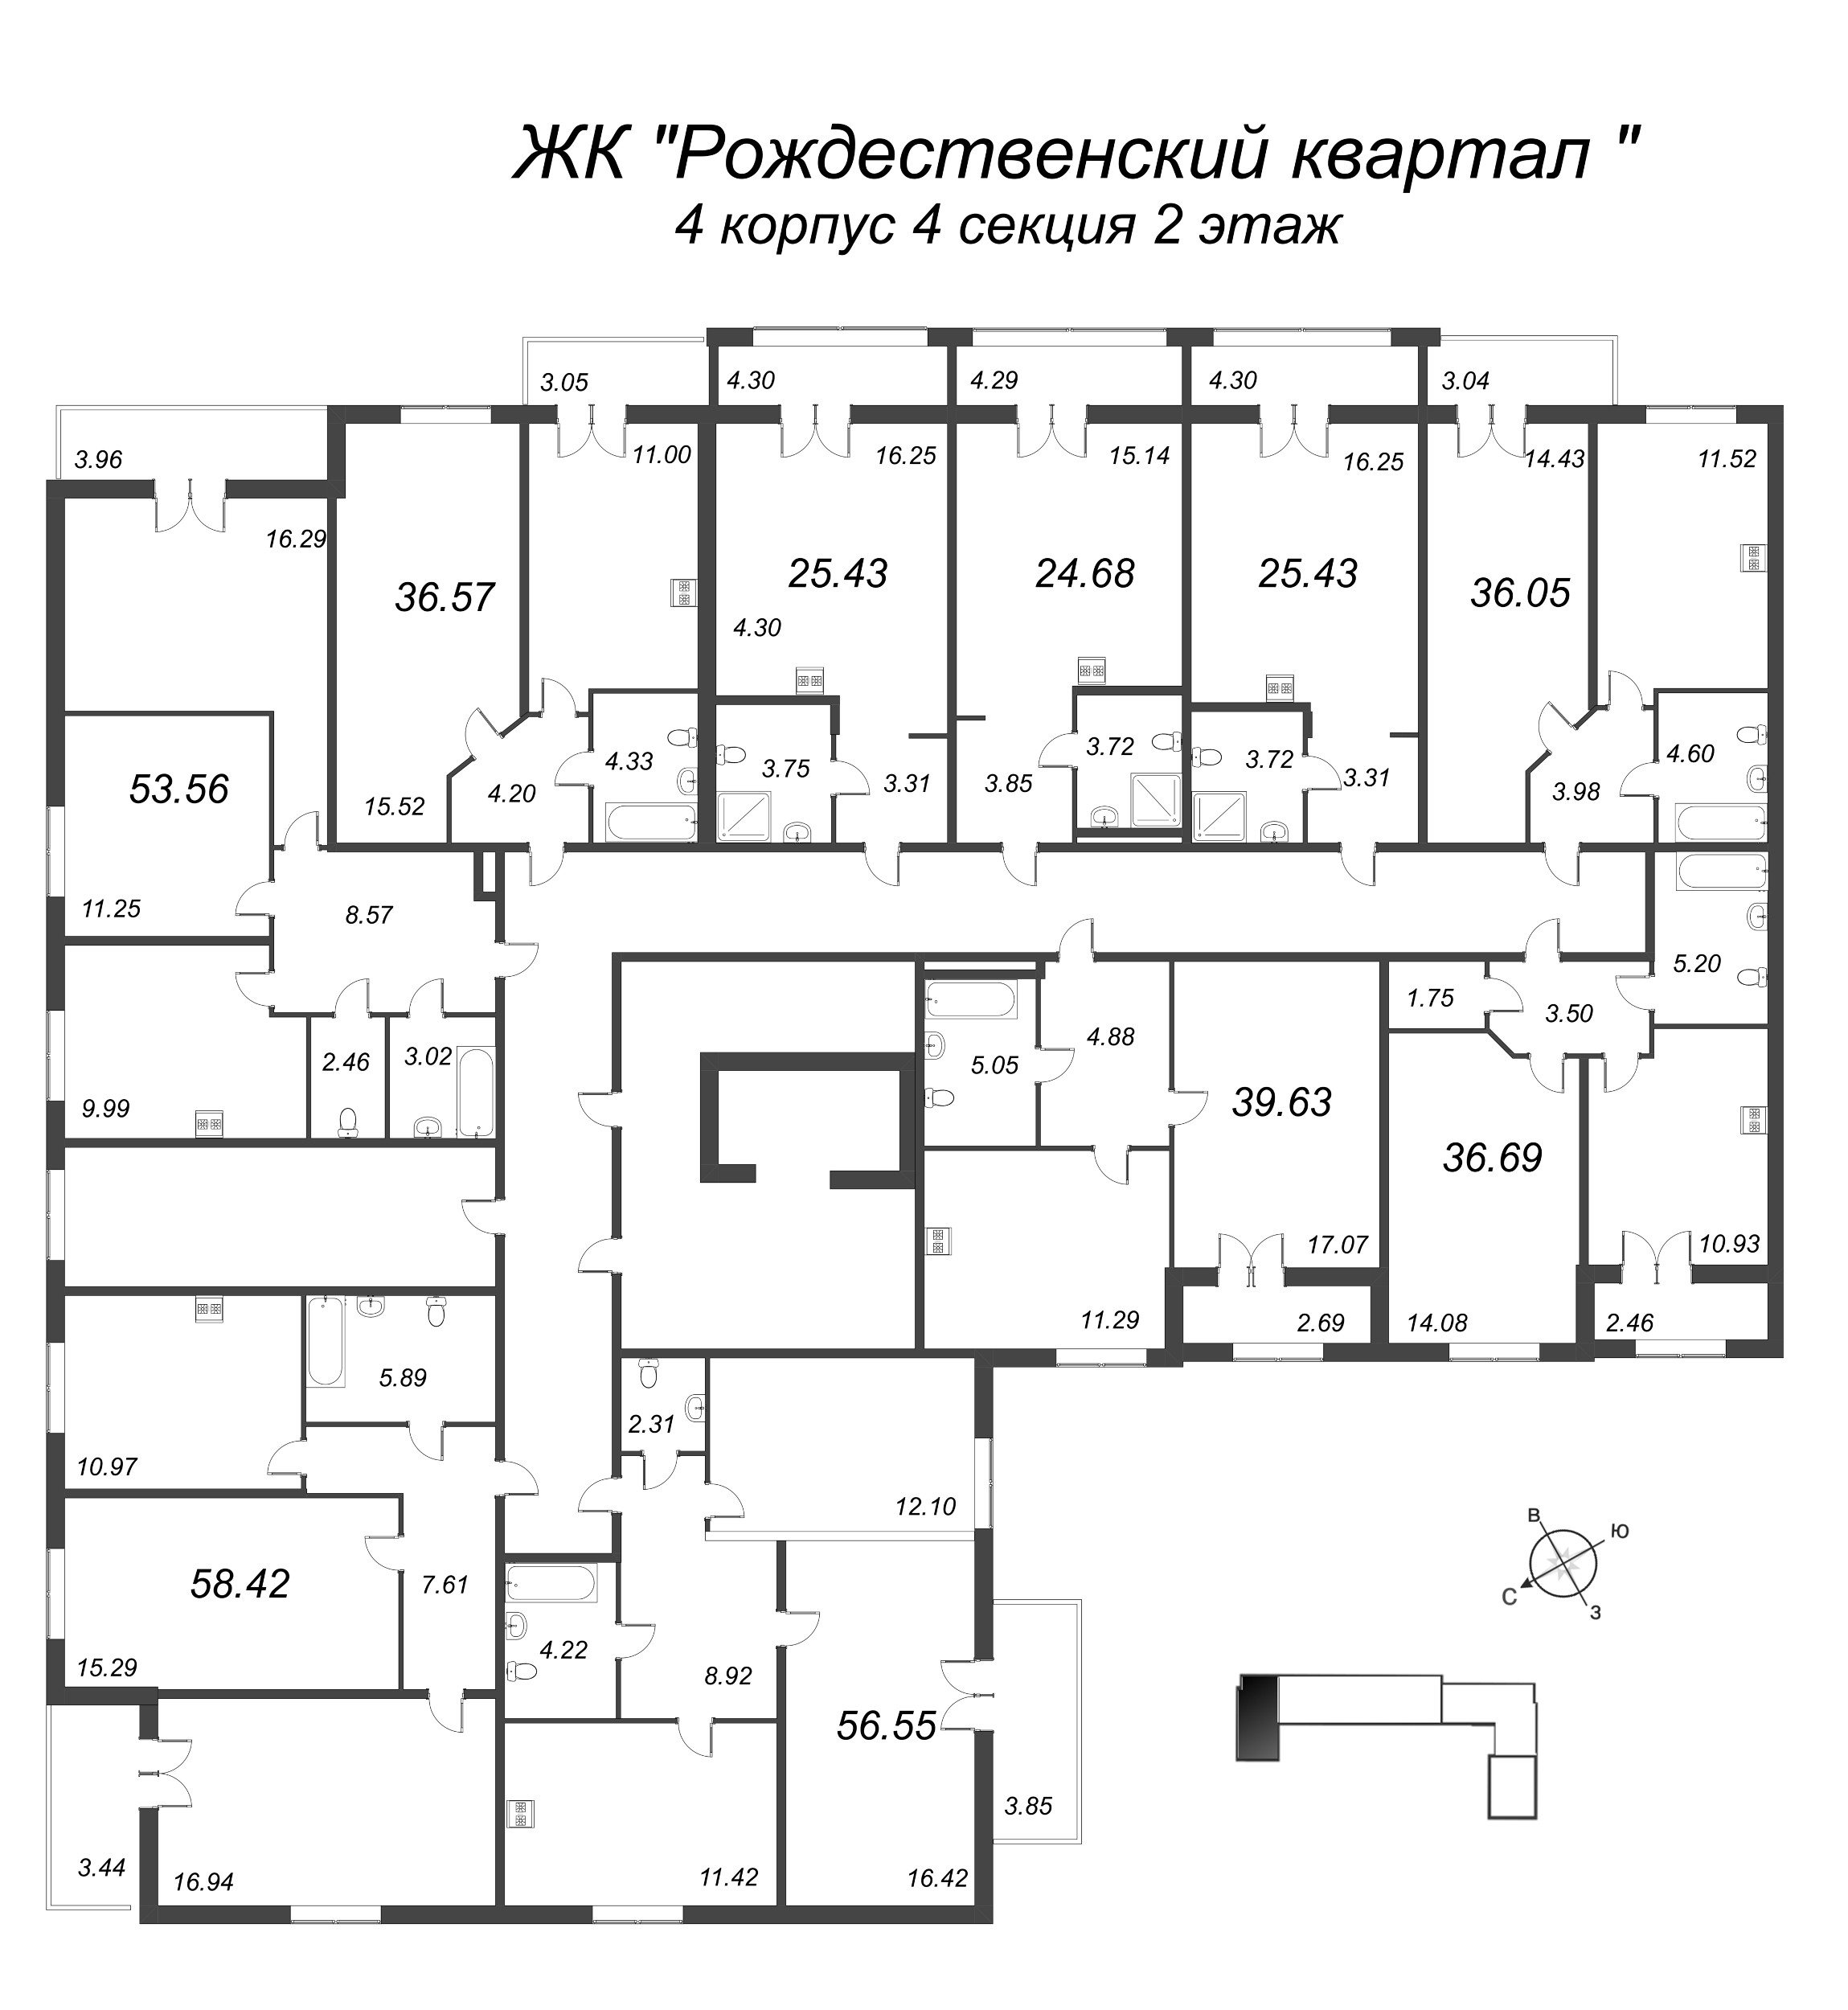 1-комнатная квартира, 36.05 м² в ЖК "Рождественский квартал" - планировка этажа